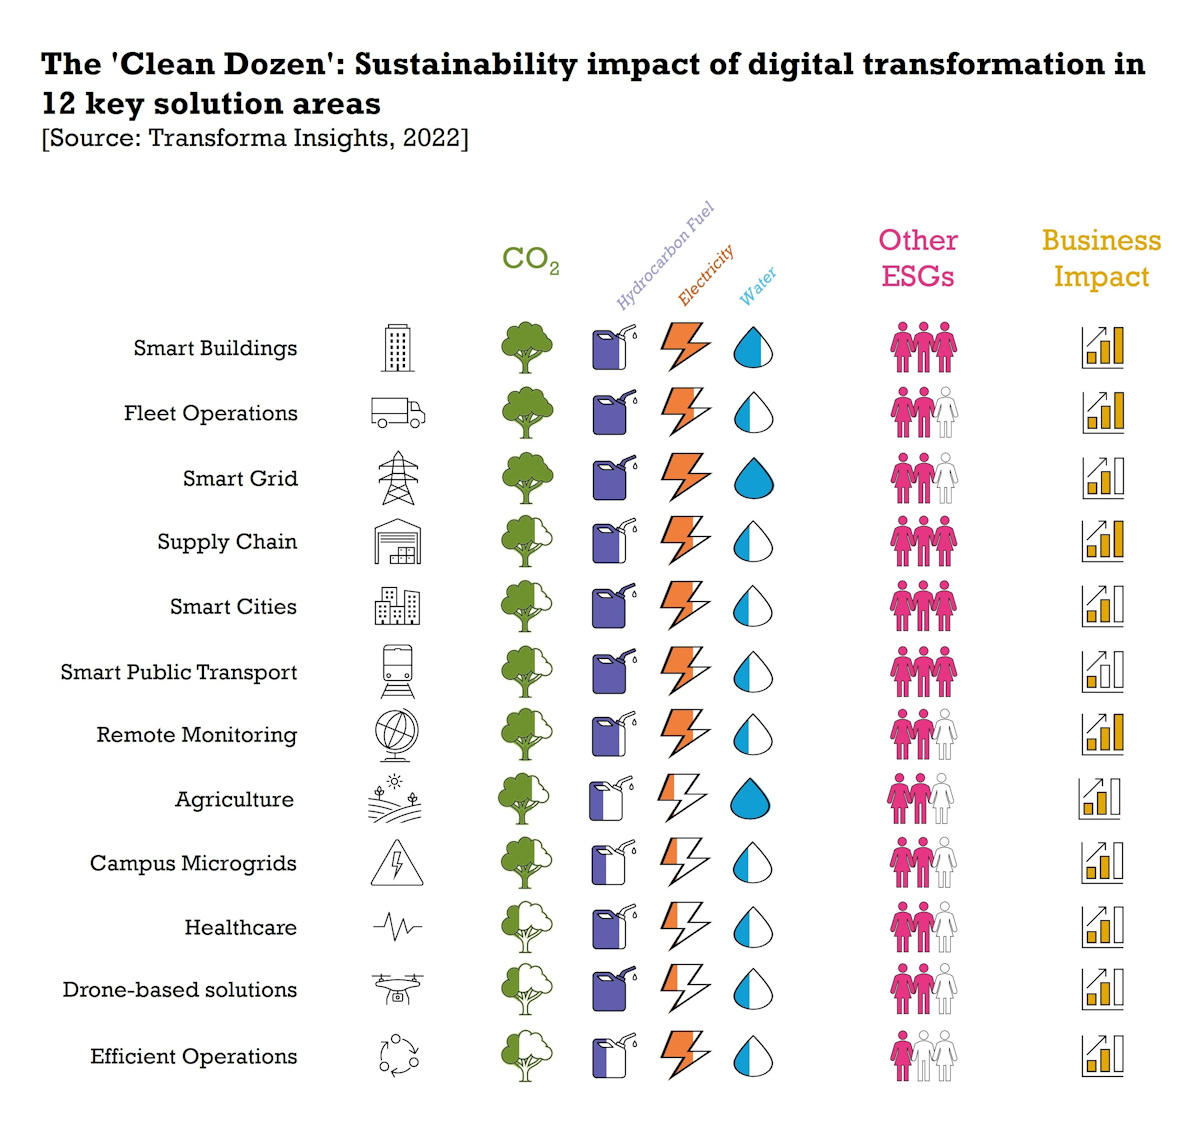 Un nuevo informe de Transforma Insights identifica las iniciativas de transformación digital 'Clean Dozen' que impulsarán la sostenibilidad